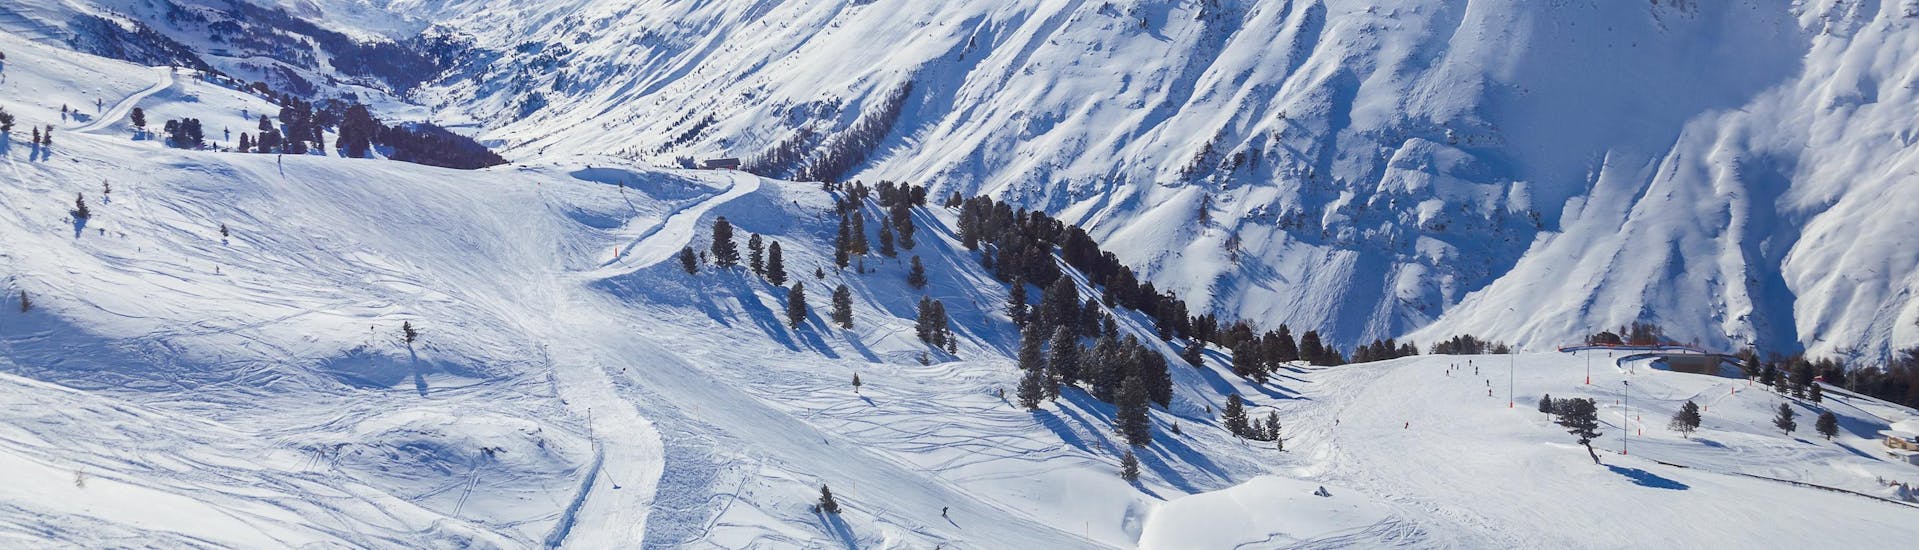 Blick auf die alpine Landschaft der Skigebiete Obergurgl und Hochgurgl, wo die örtlichen Skischulen ihre Skikurse anbieten.